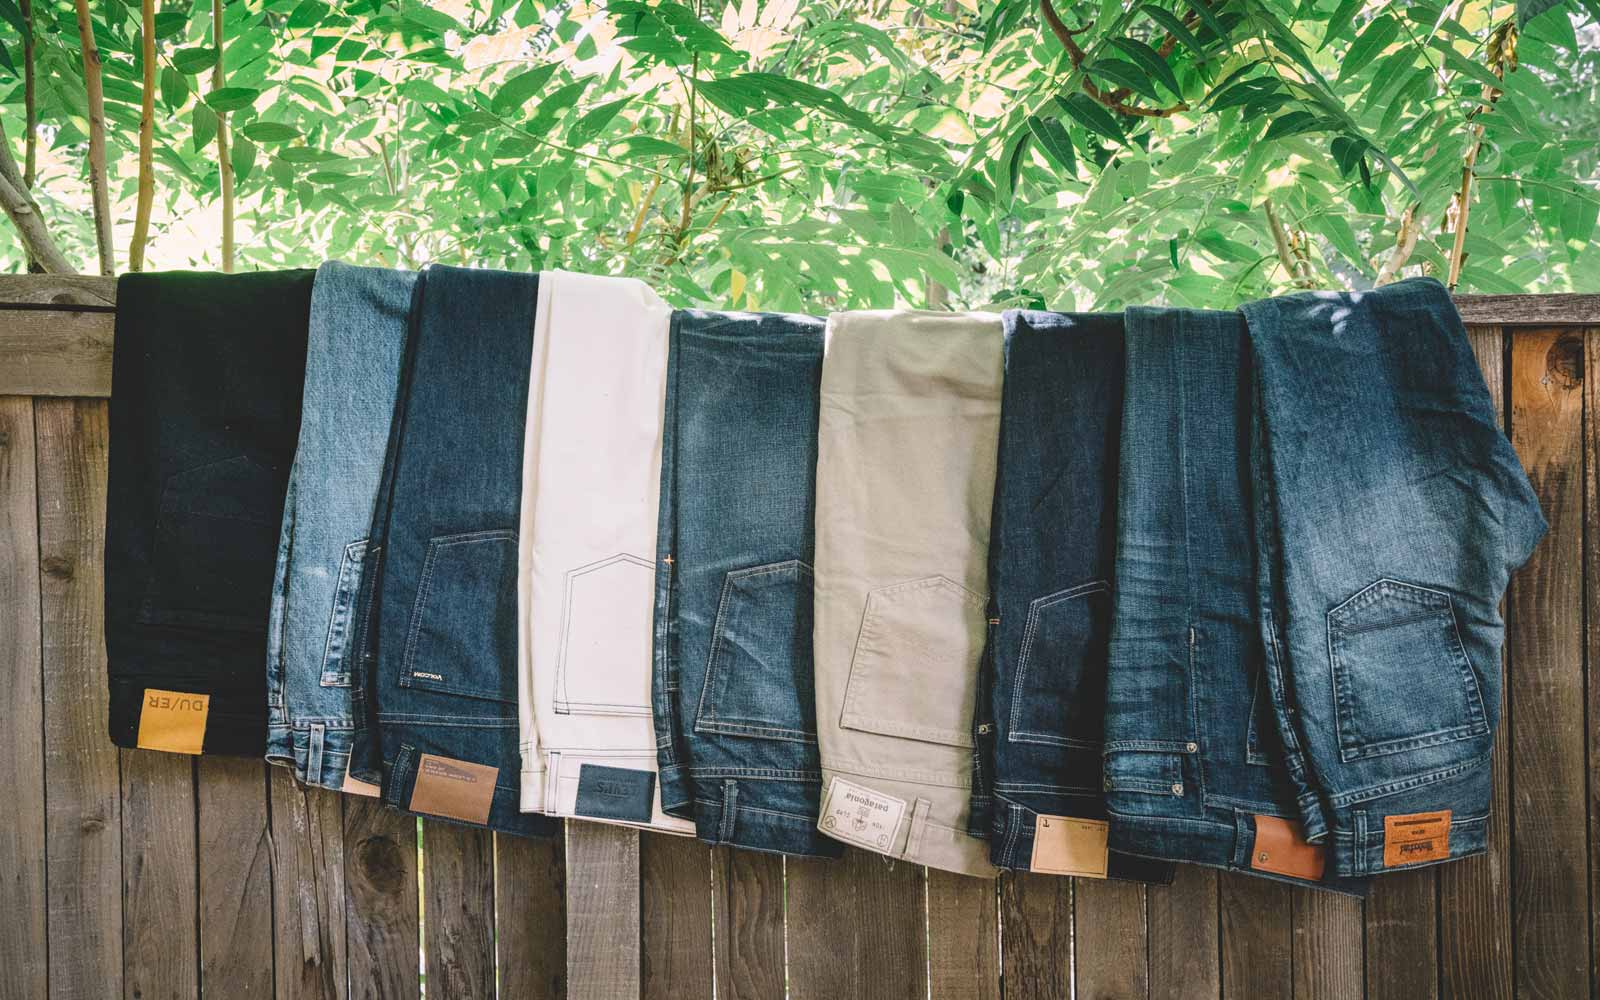 https://www.ties.com/blog/wp-content/uploads/2013/11/Jeans_A-Pants-Size-Comparison_01.jpg